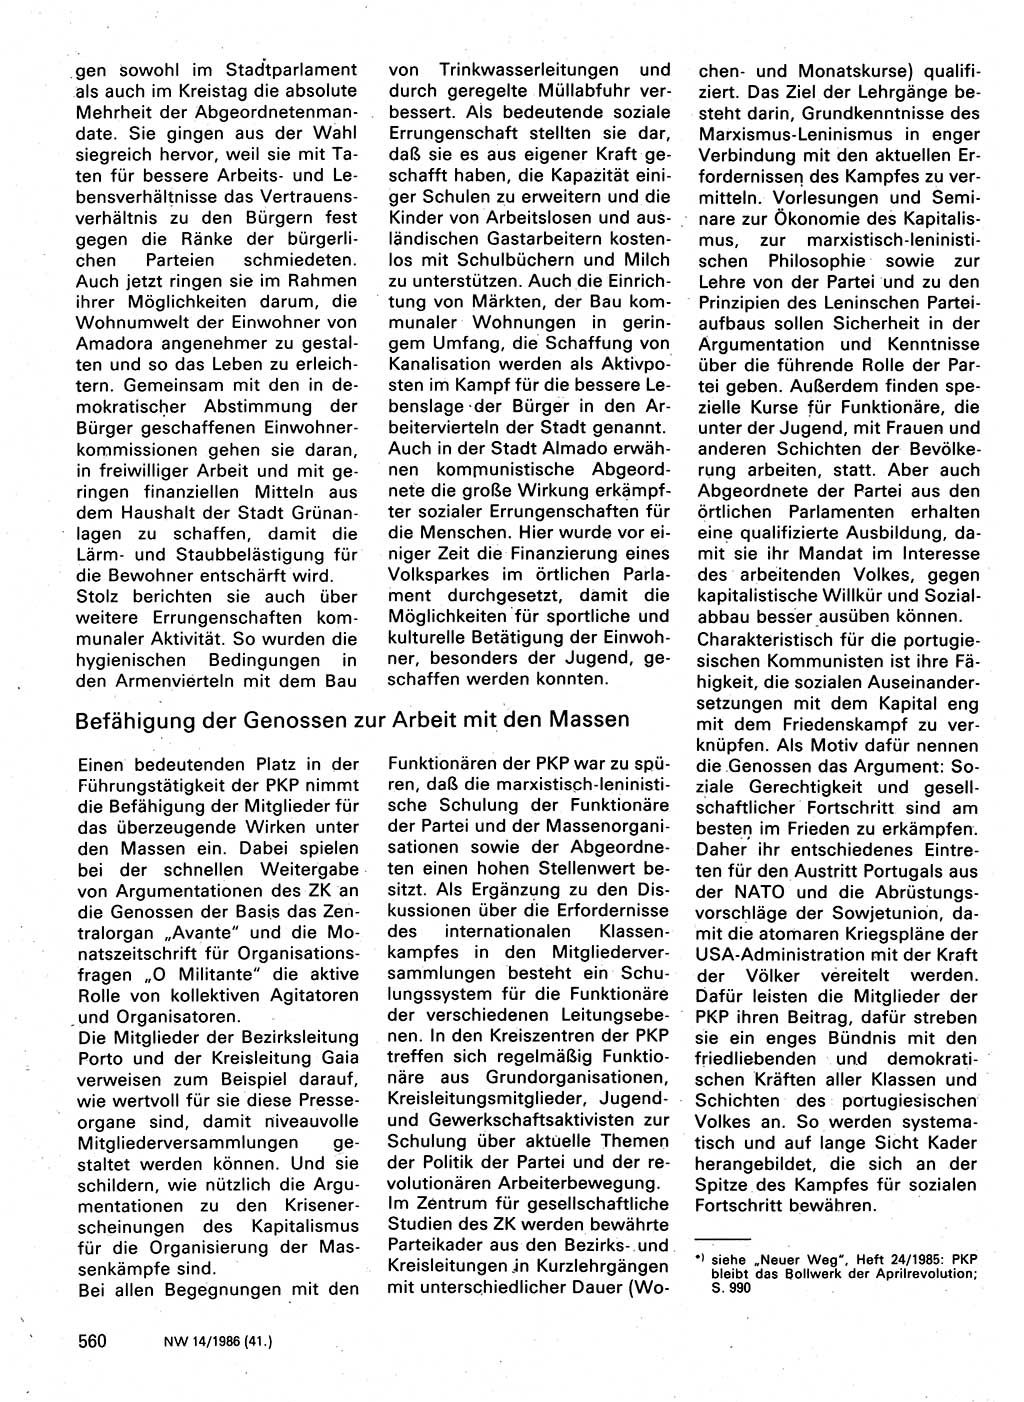 Neuer Weg (NW), Organ des Zentralkomitees (ZK) der SED (Sozialistische Einheitspartei Deutschlands) für Fragen des Parteilebens, 41. Jahrgang [Deutsche Demokratische Republik (DDR)] 1986, Seite 560 (NW ZK SED DDR 1986, S. 560)